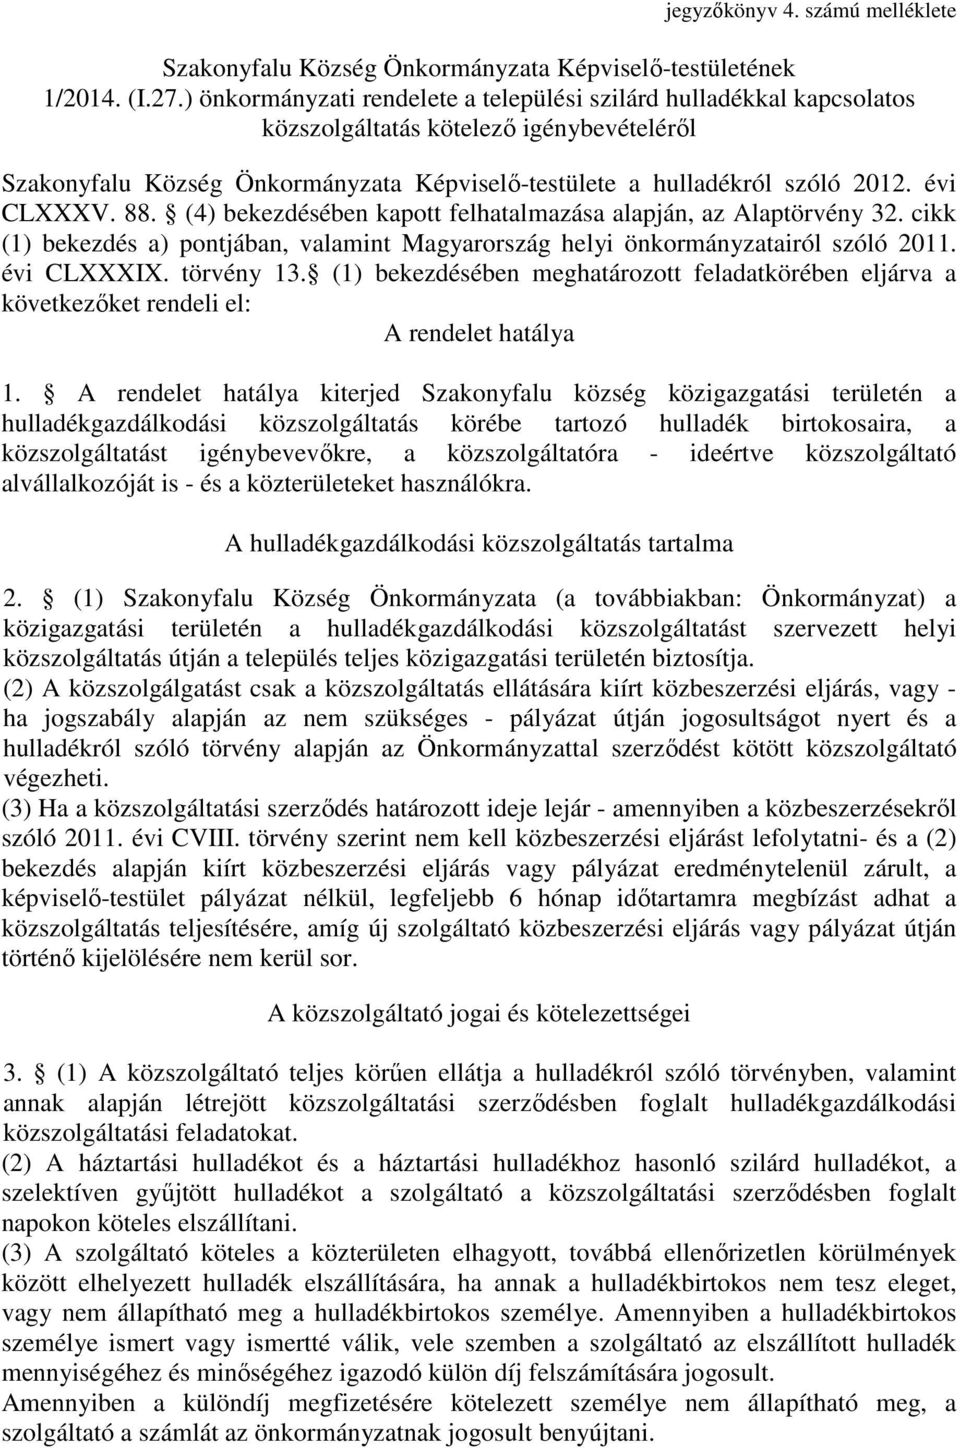 évi CLXXXV. 88. (4) bekezdésében kapott felhatalmazása alapján, az Alaptörvény 32. cikk (1) bekezdés a) pontjában, valamint Magyarország helyi önkormányzatairól szóló 2011. évi CLXXXIX. törvény 13.